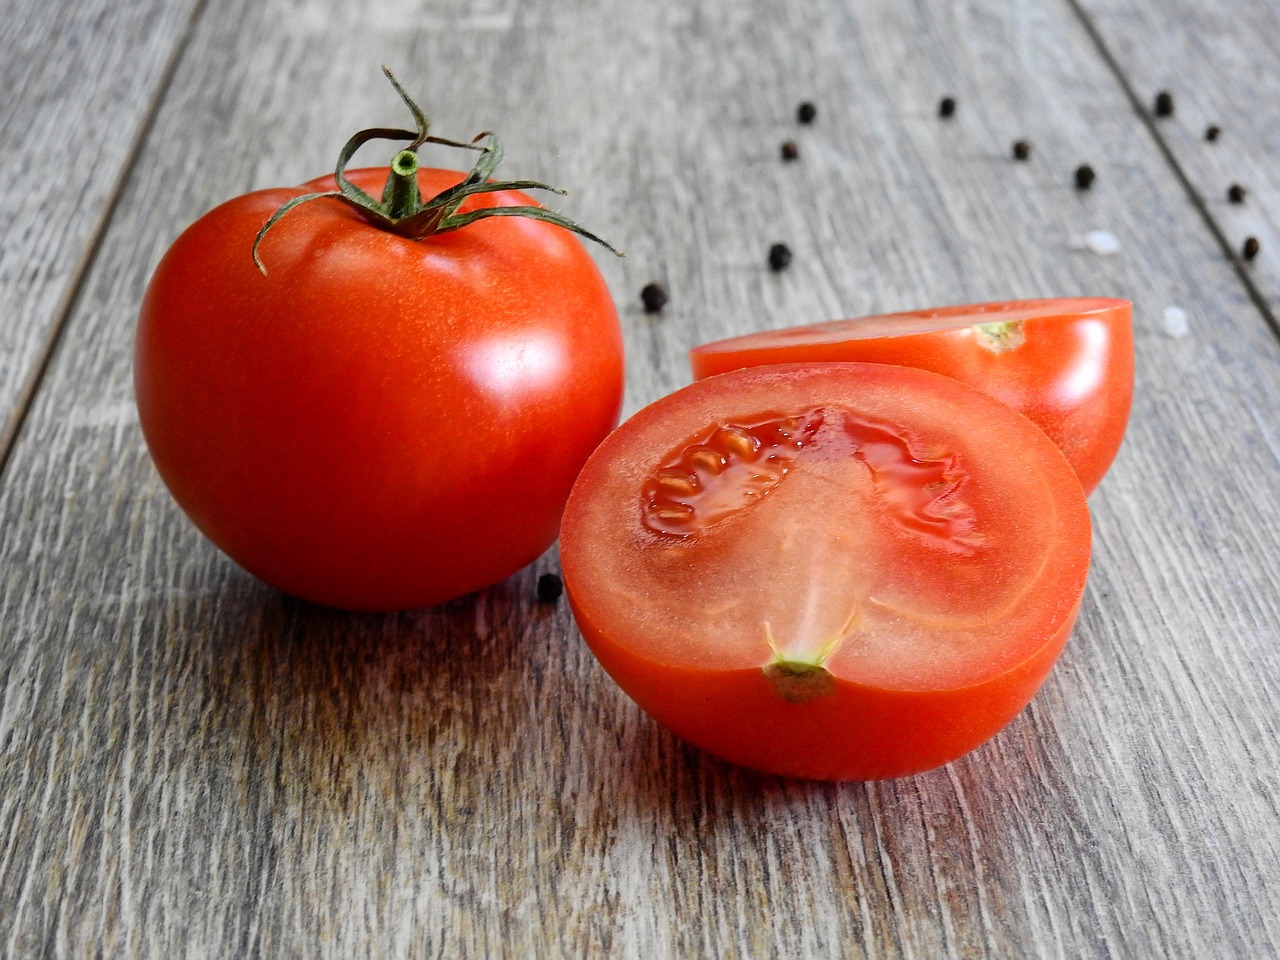 Вкусный весенний витамин: где дешевле всего купить помидоры